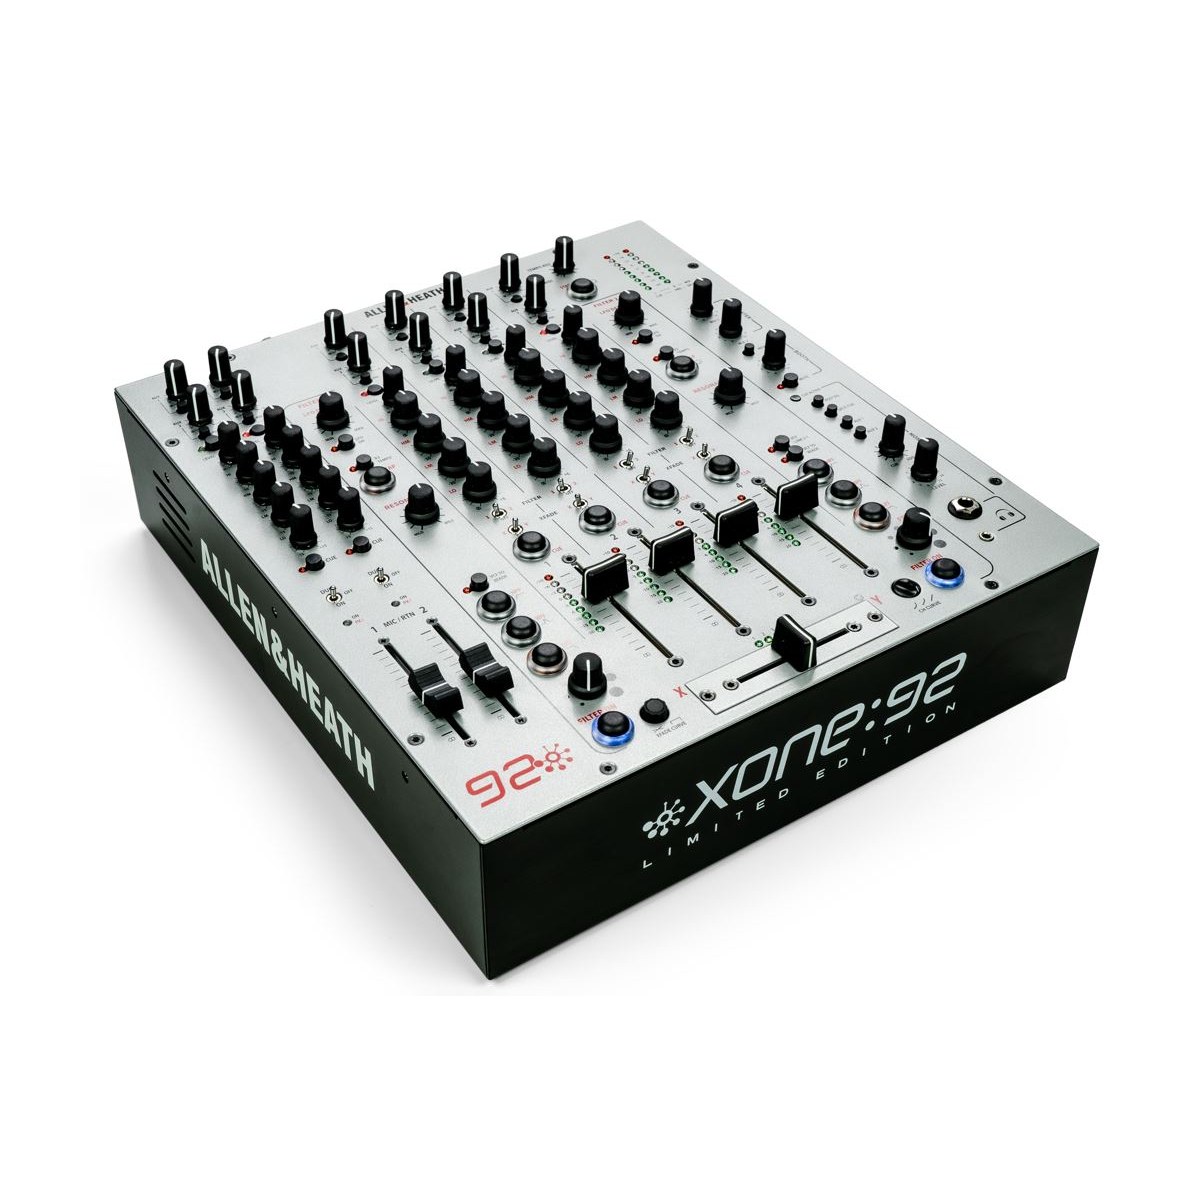 Tables de mixage DJ - Allen & Heath - XONE 92 (édition limitée)